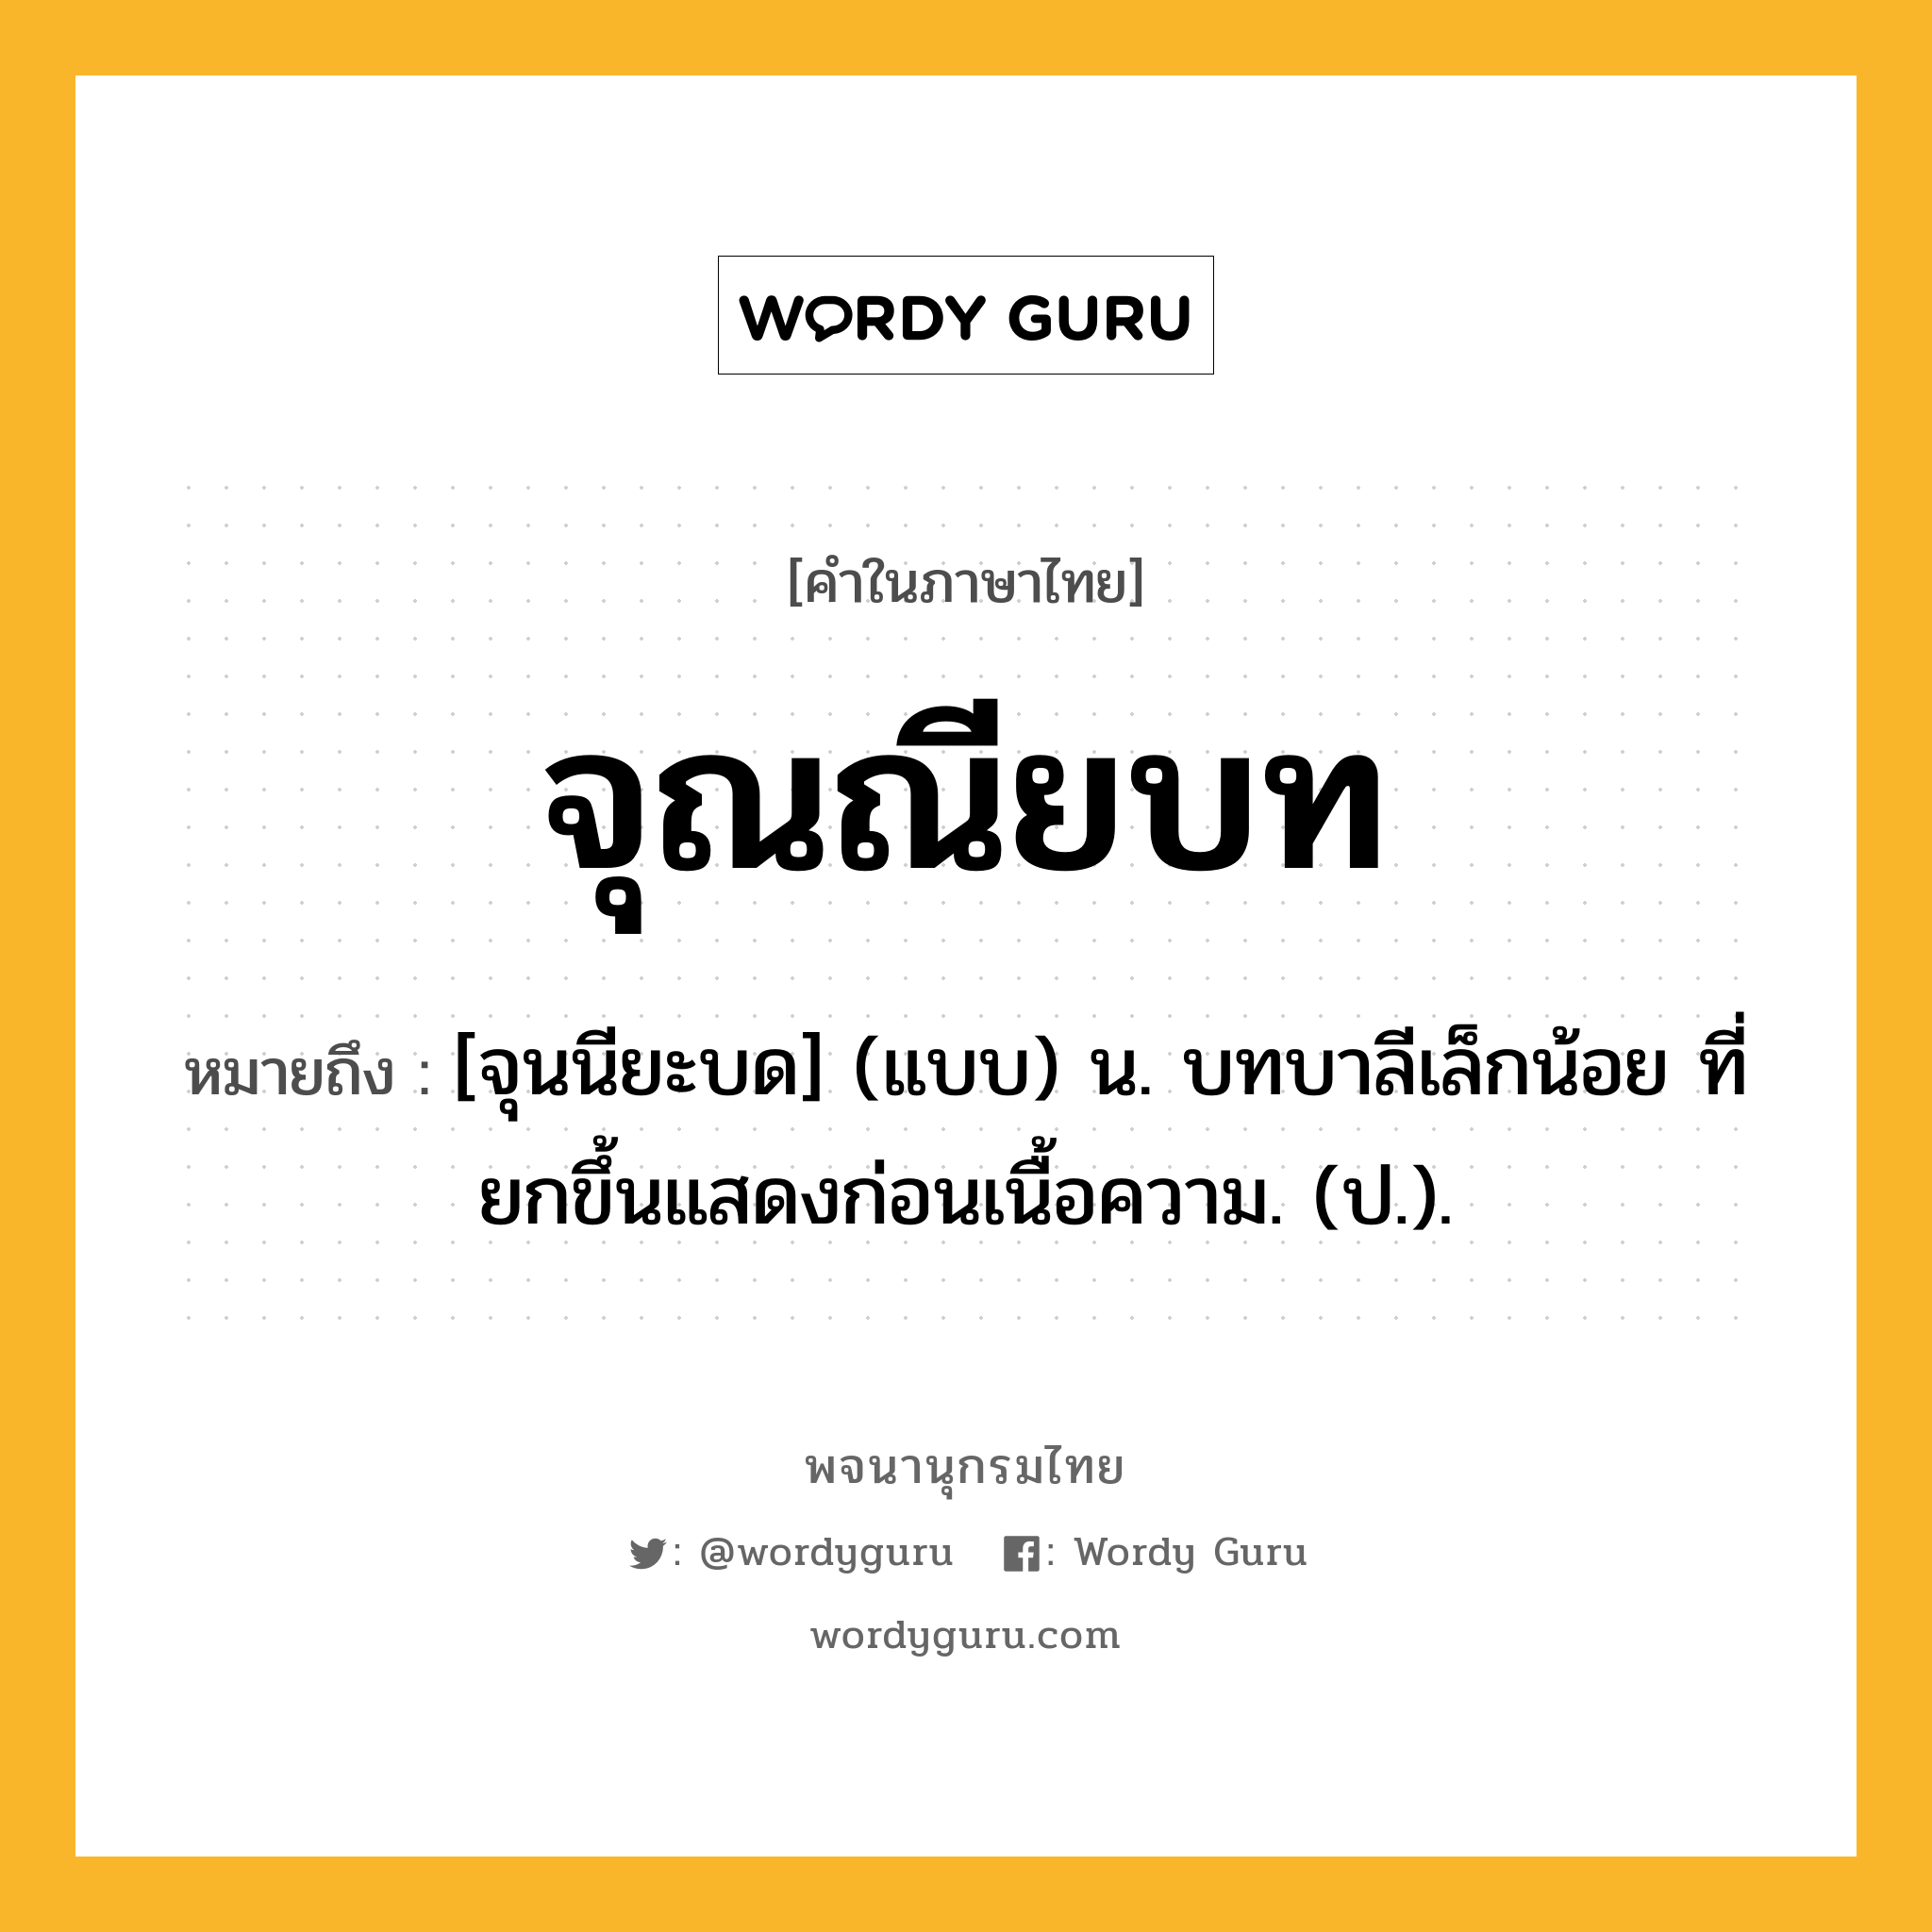 จุณณียบท หมายถึงอะไร?, คำในภาษาไทย จุณณียบท หมายถึง [จุนนียะบด] (แบบ) น. บทบาลีเล็กน้อย ที่ยกขึ้นแสดงก่อนเนื้อความ. (ป.).